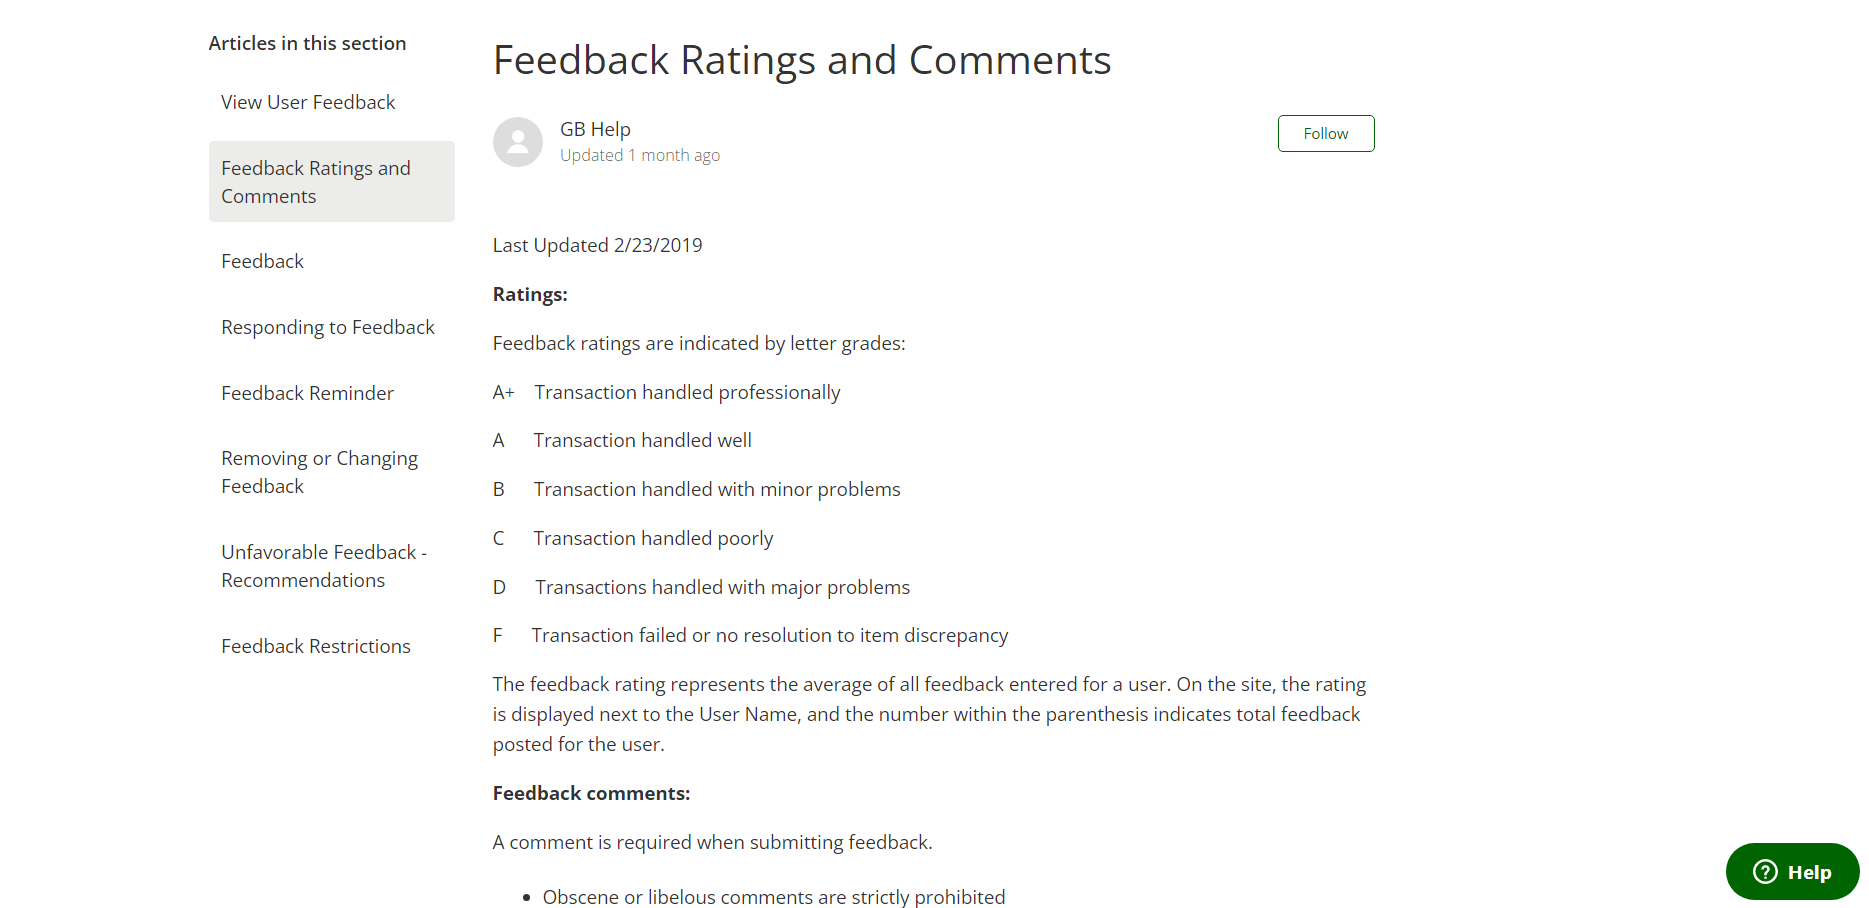 GunBroker rating system